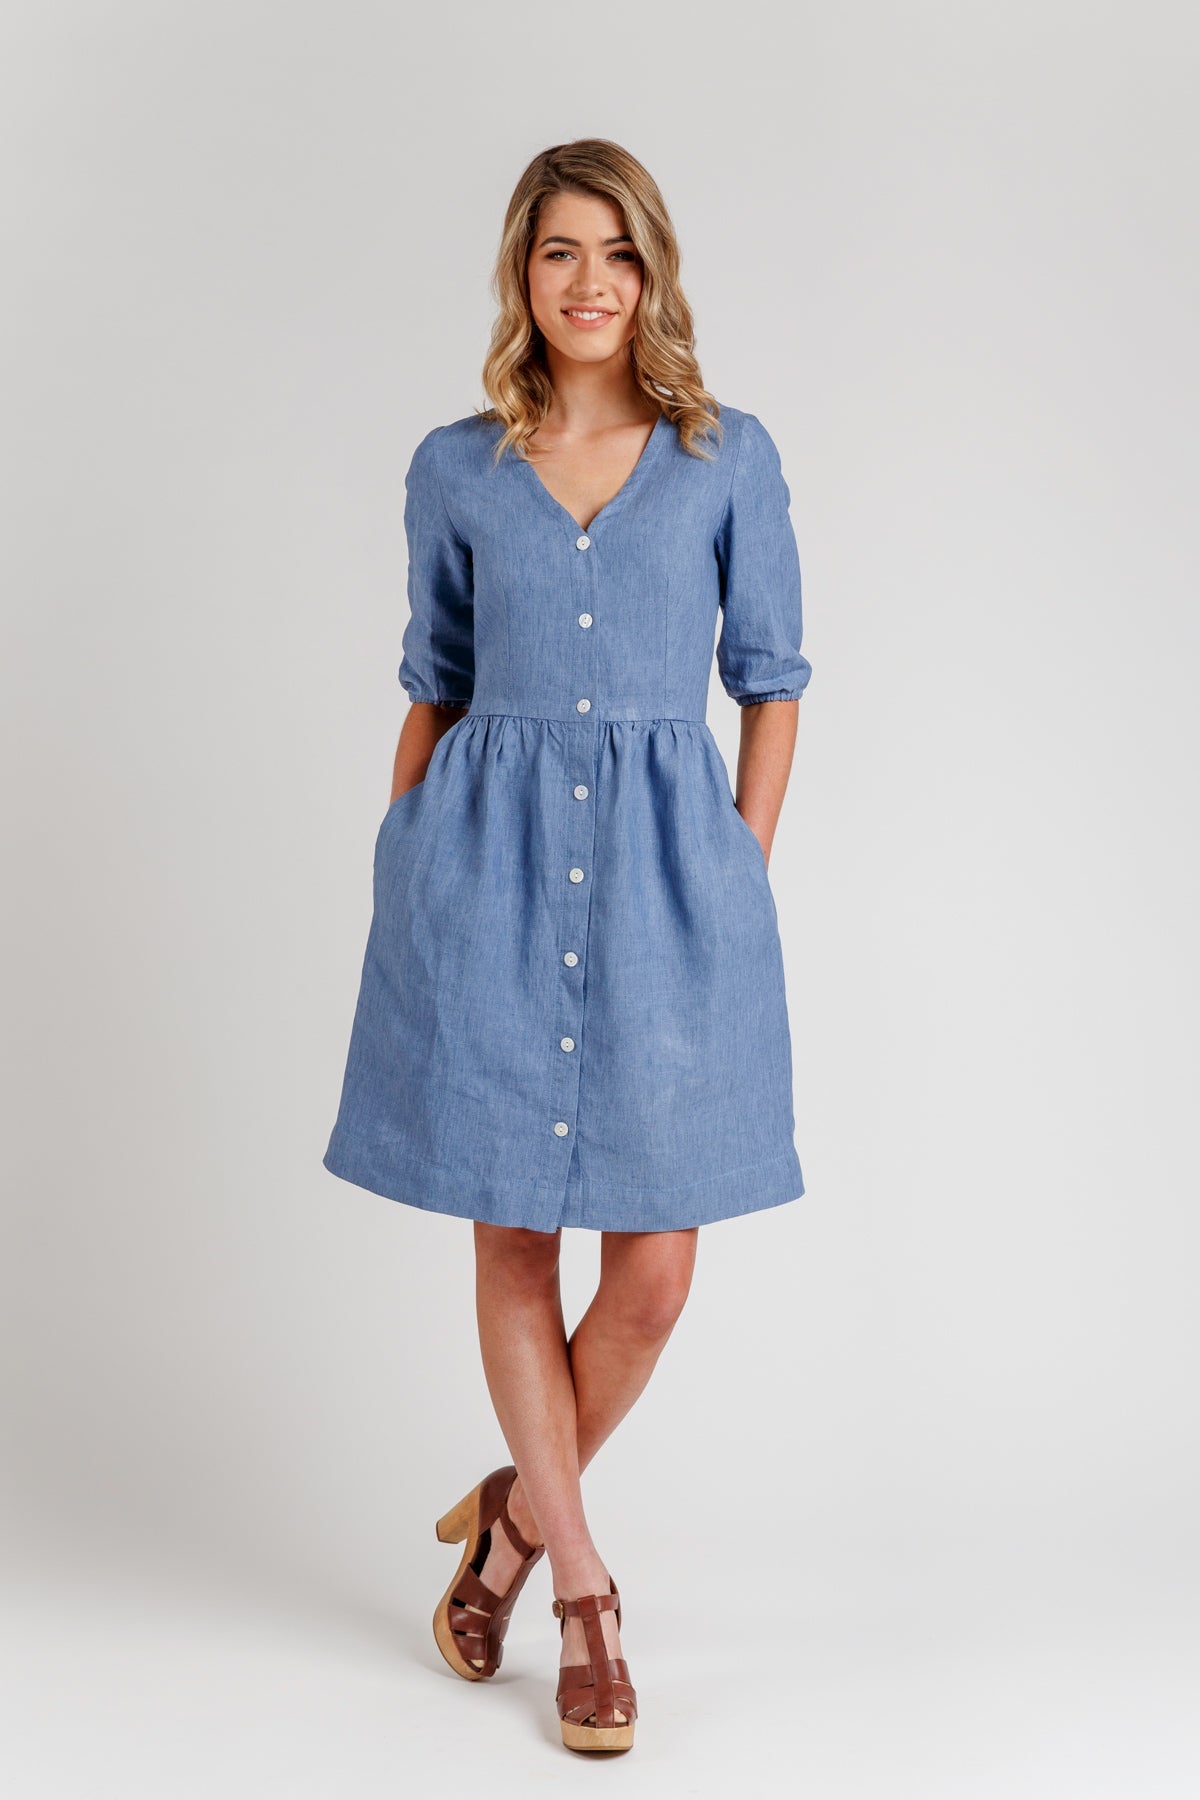 http://corefabricstore.com/cdn/shop/products/Megan-Nielsen-Darling-Ranges-dress--Core-Fabrics.jpg?v=1676123494